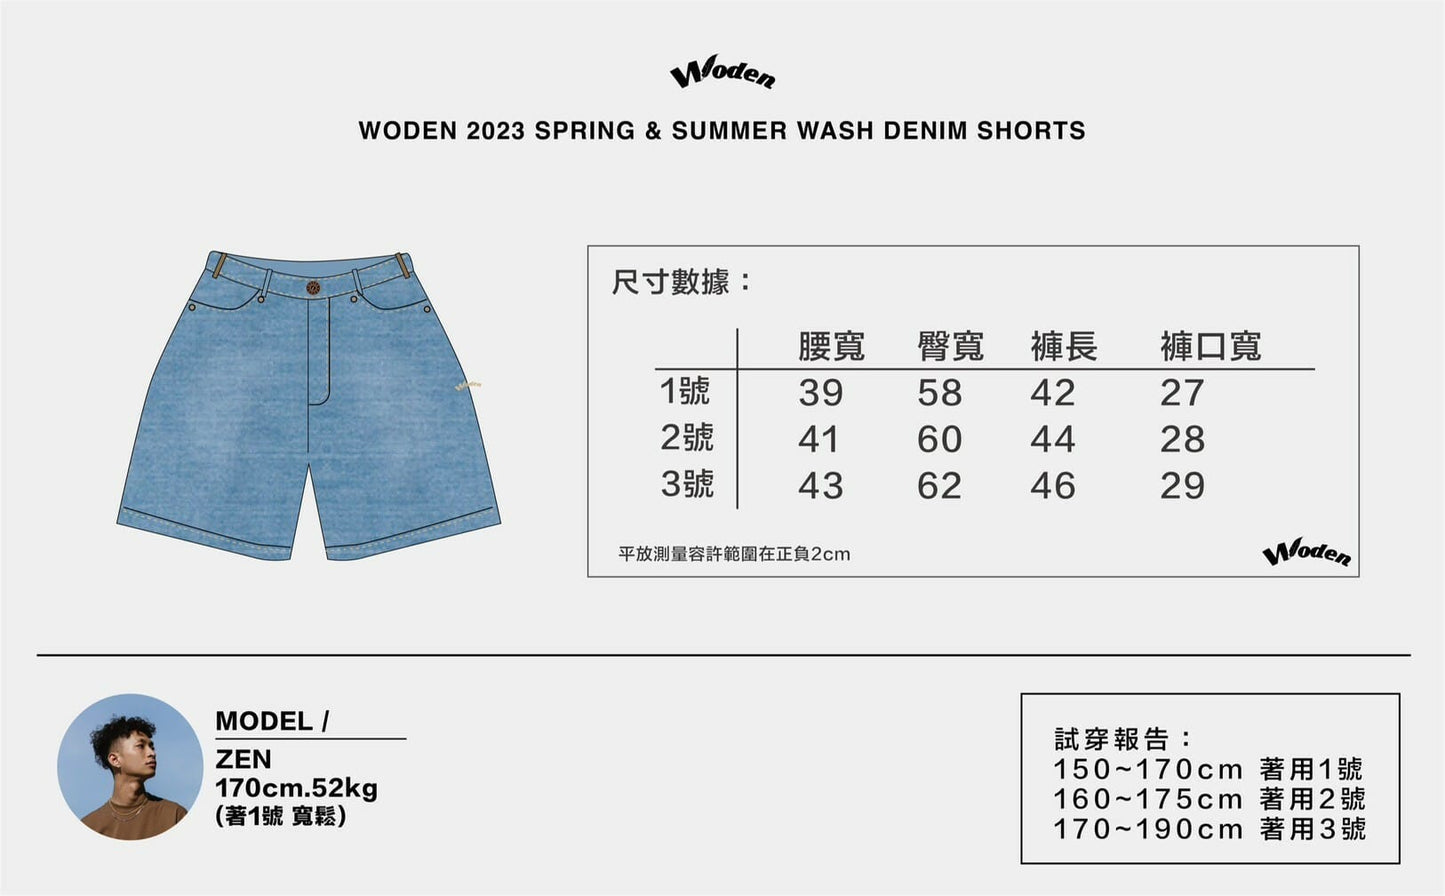 WODEN 2023 Spring & Summer 060 Wash Denim Shorts